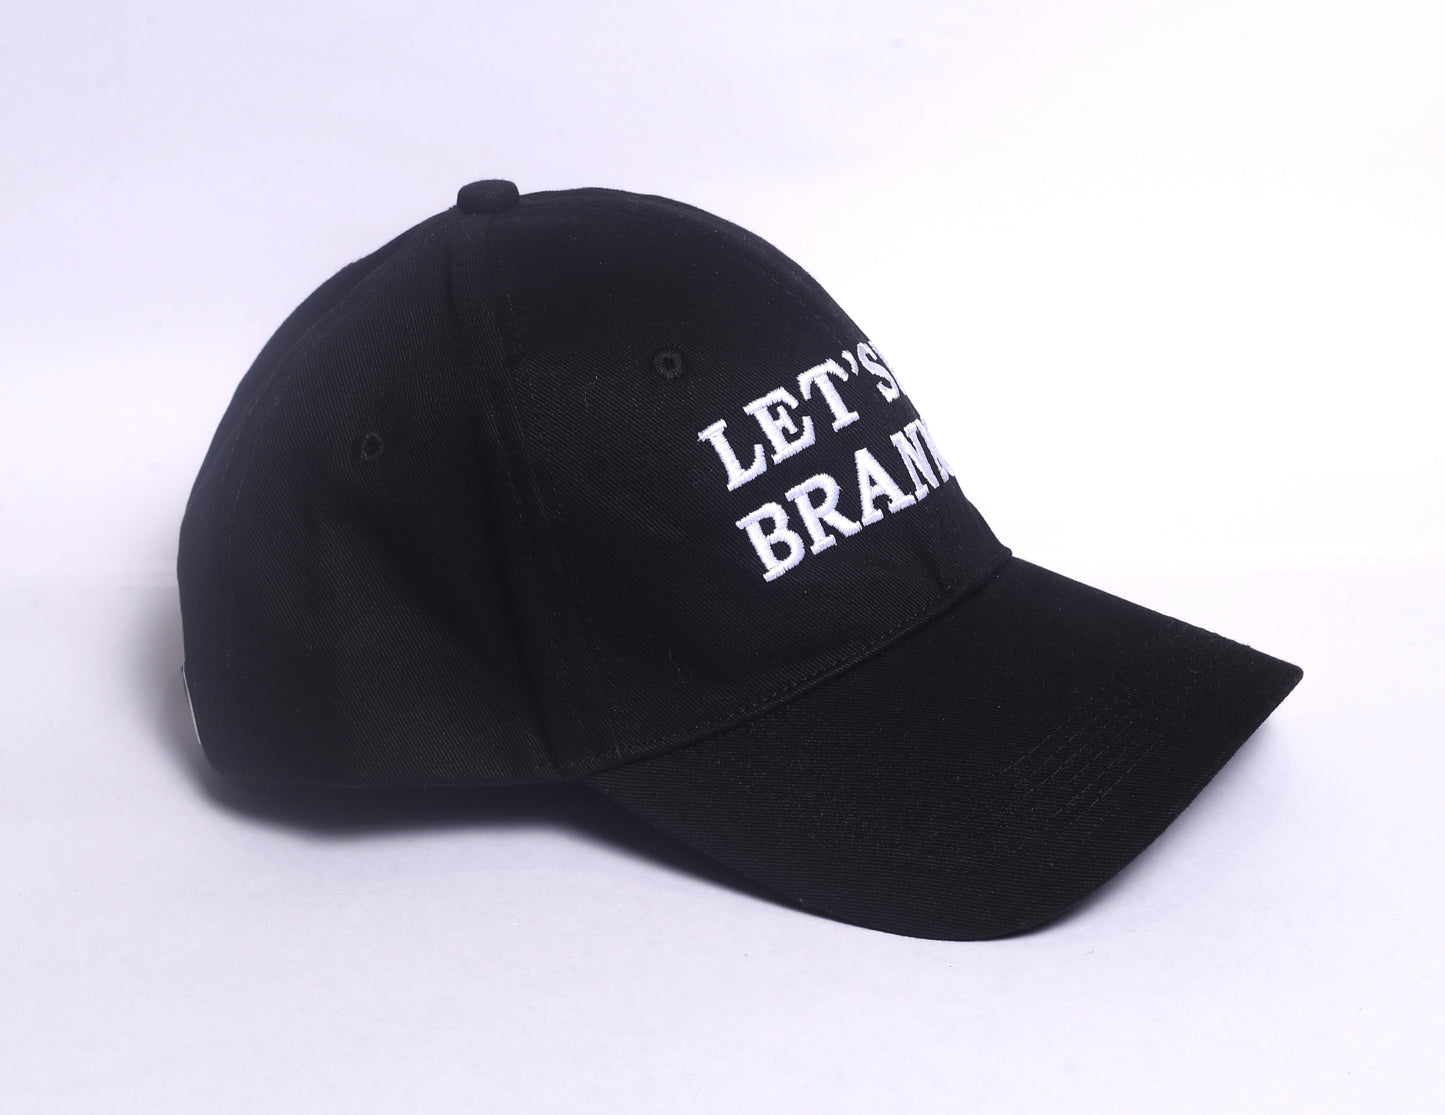 Lets Go Brandon Authentic Cotton Black Hat